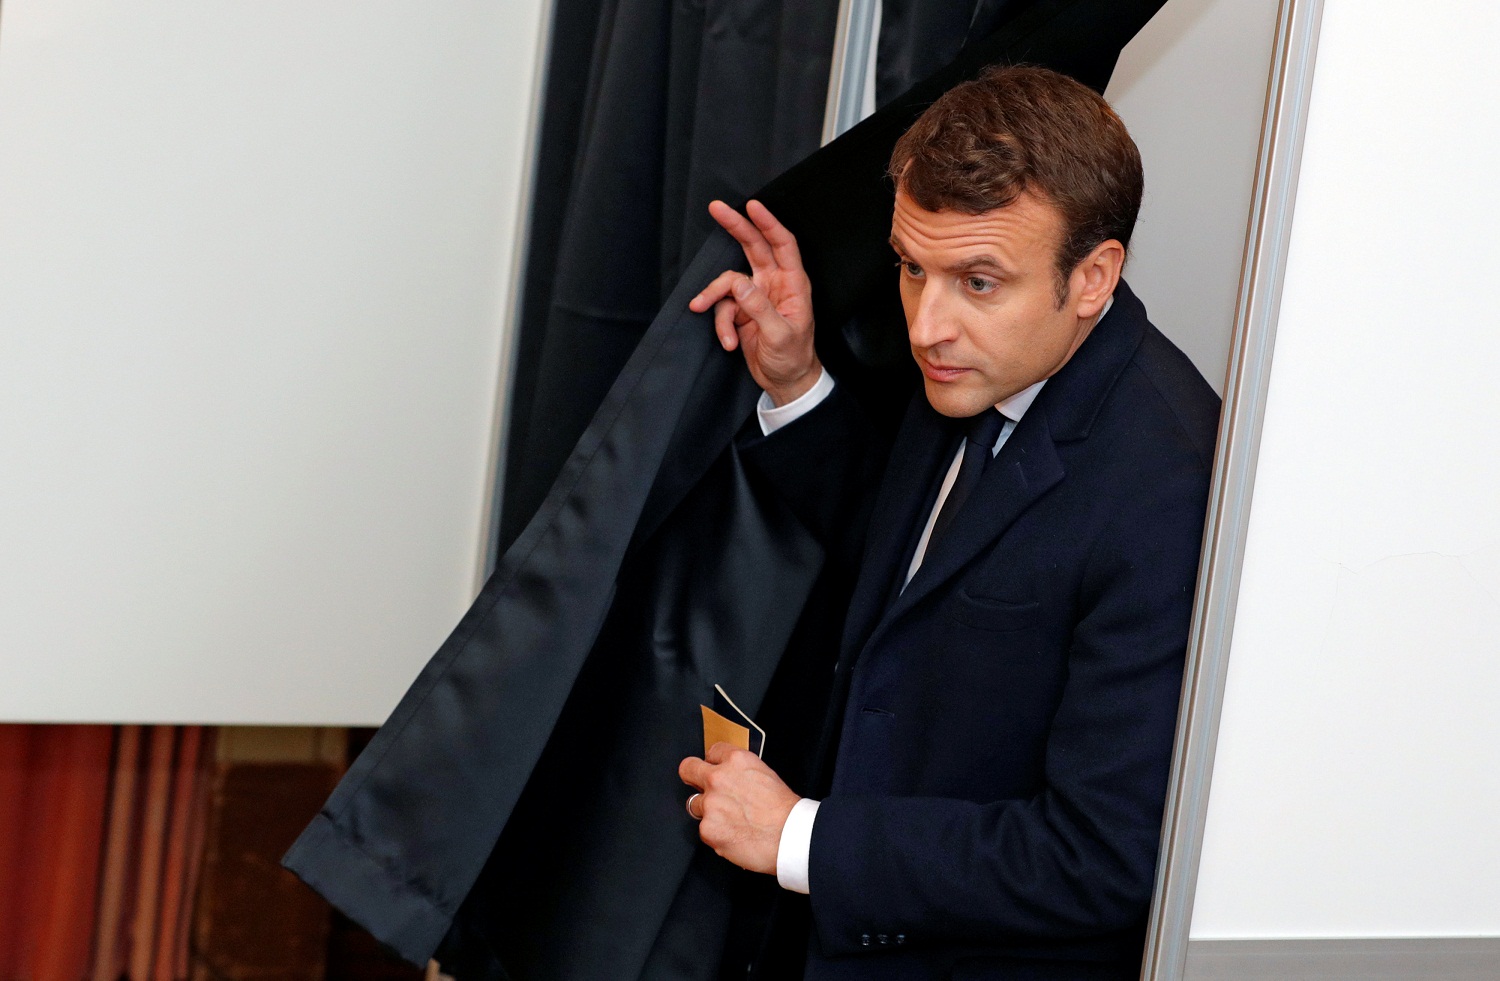 Emmanuel Macron, el hombre que llegó, vio y venció